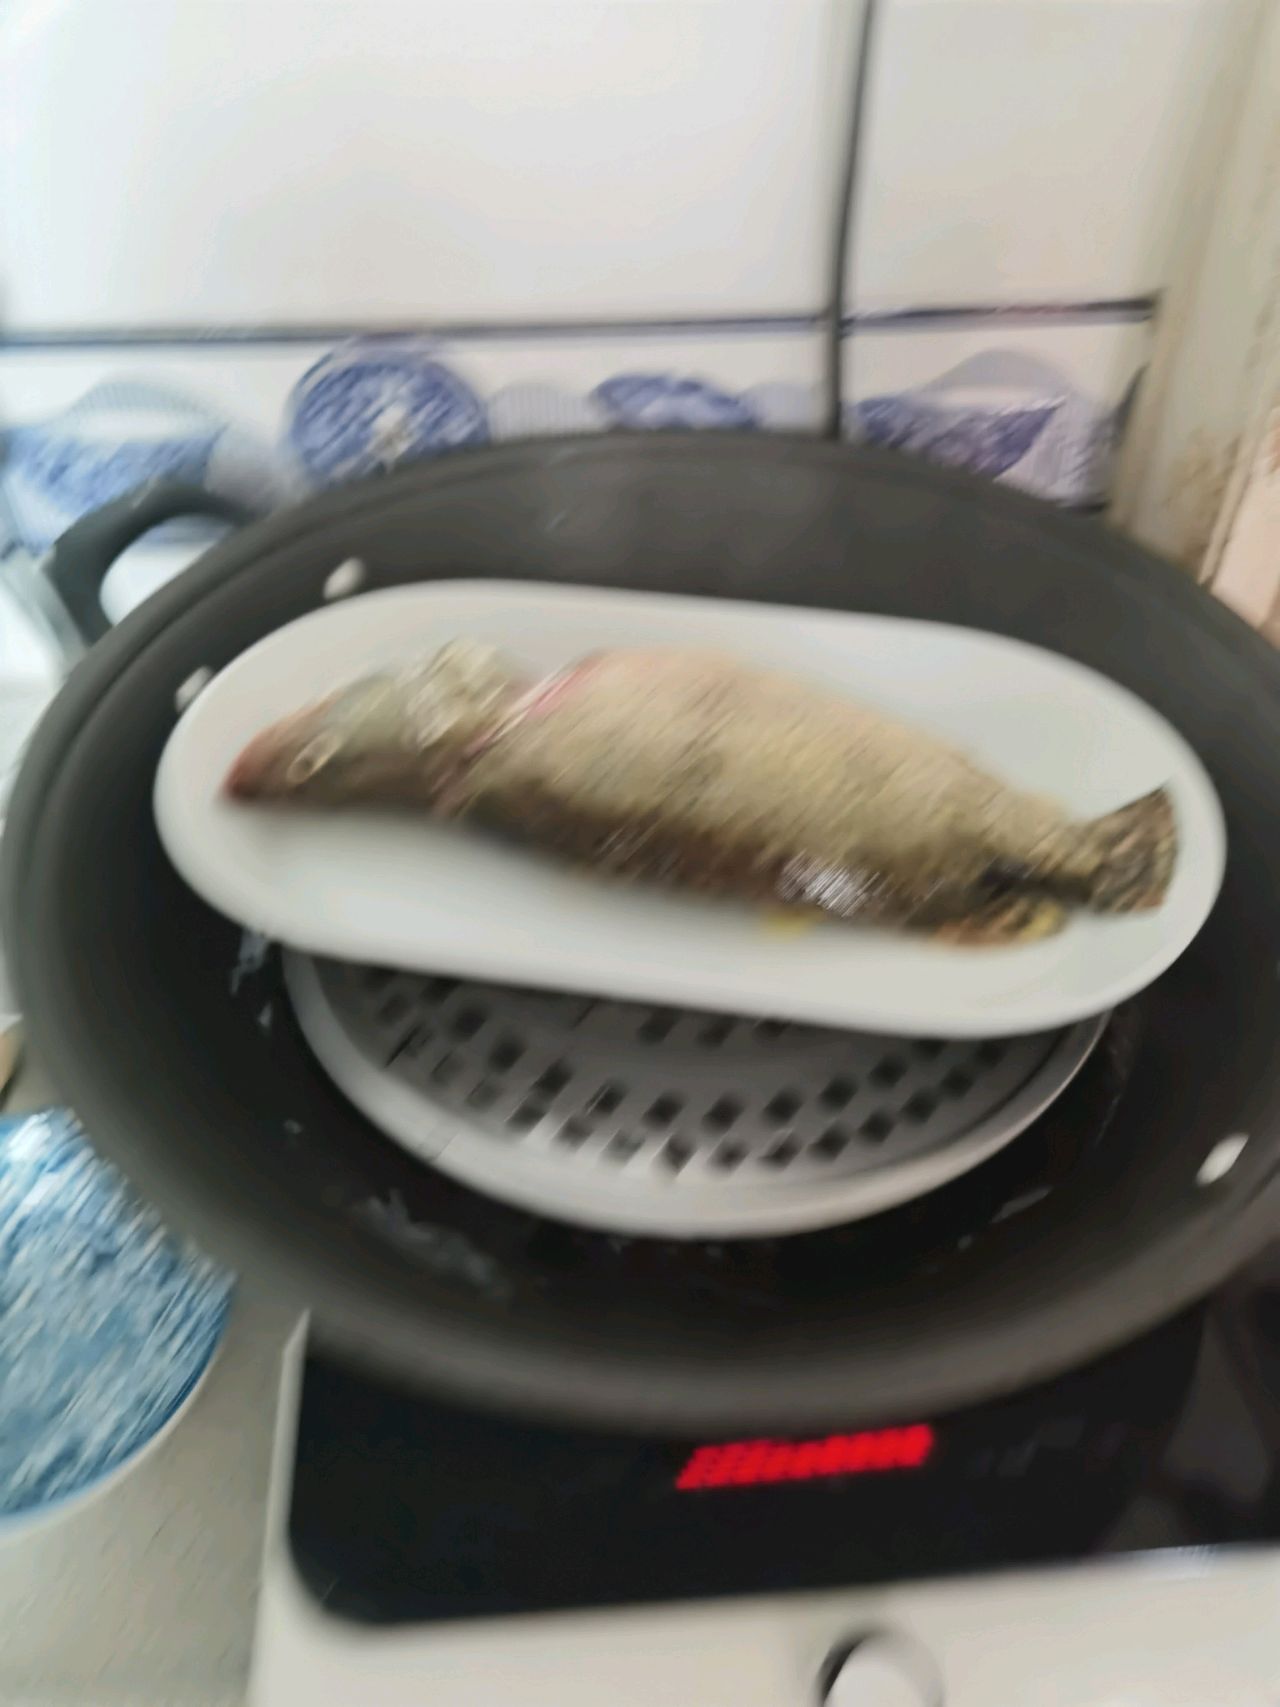 mandarin fish in wok